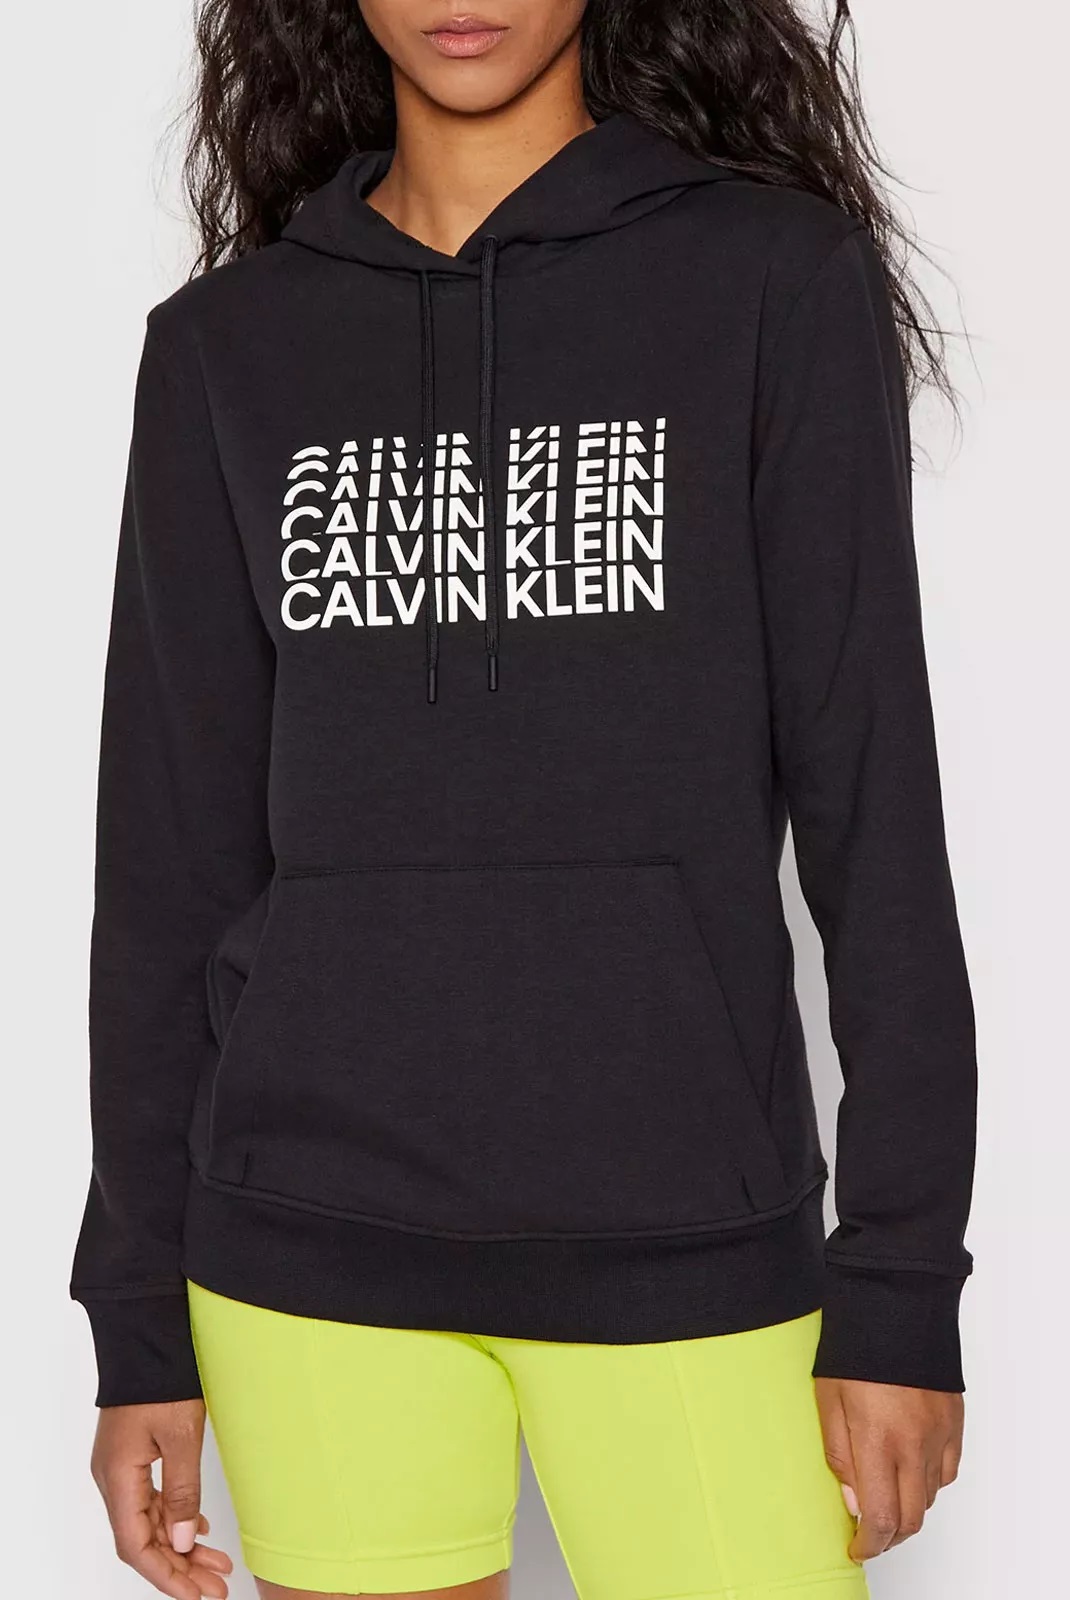 Calvin Klein dámská mikina s kapucí černá Velikost: L